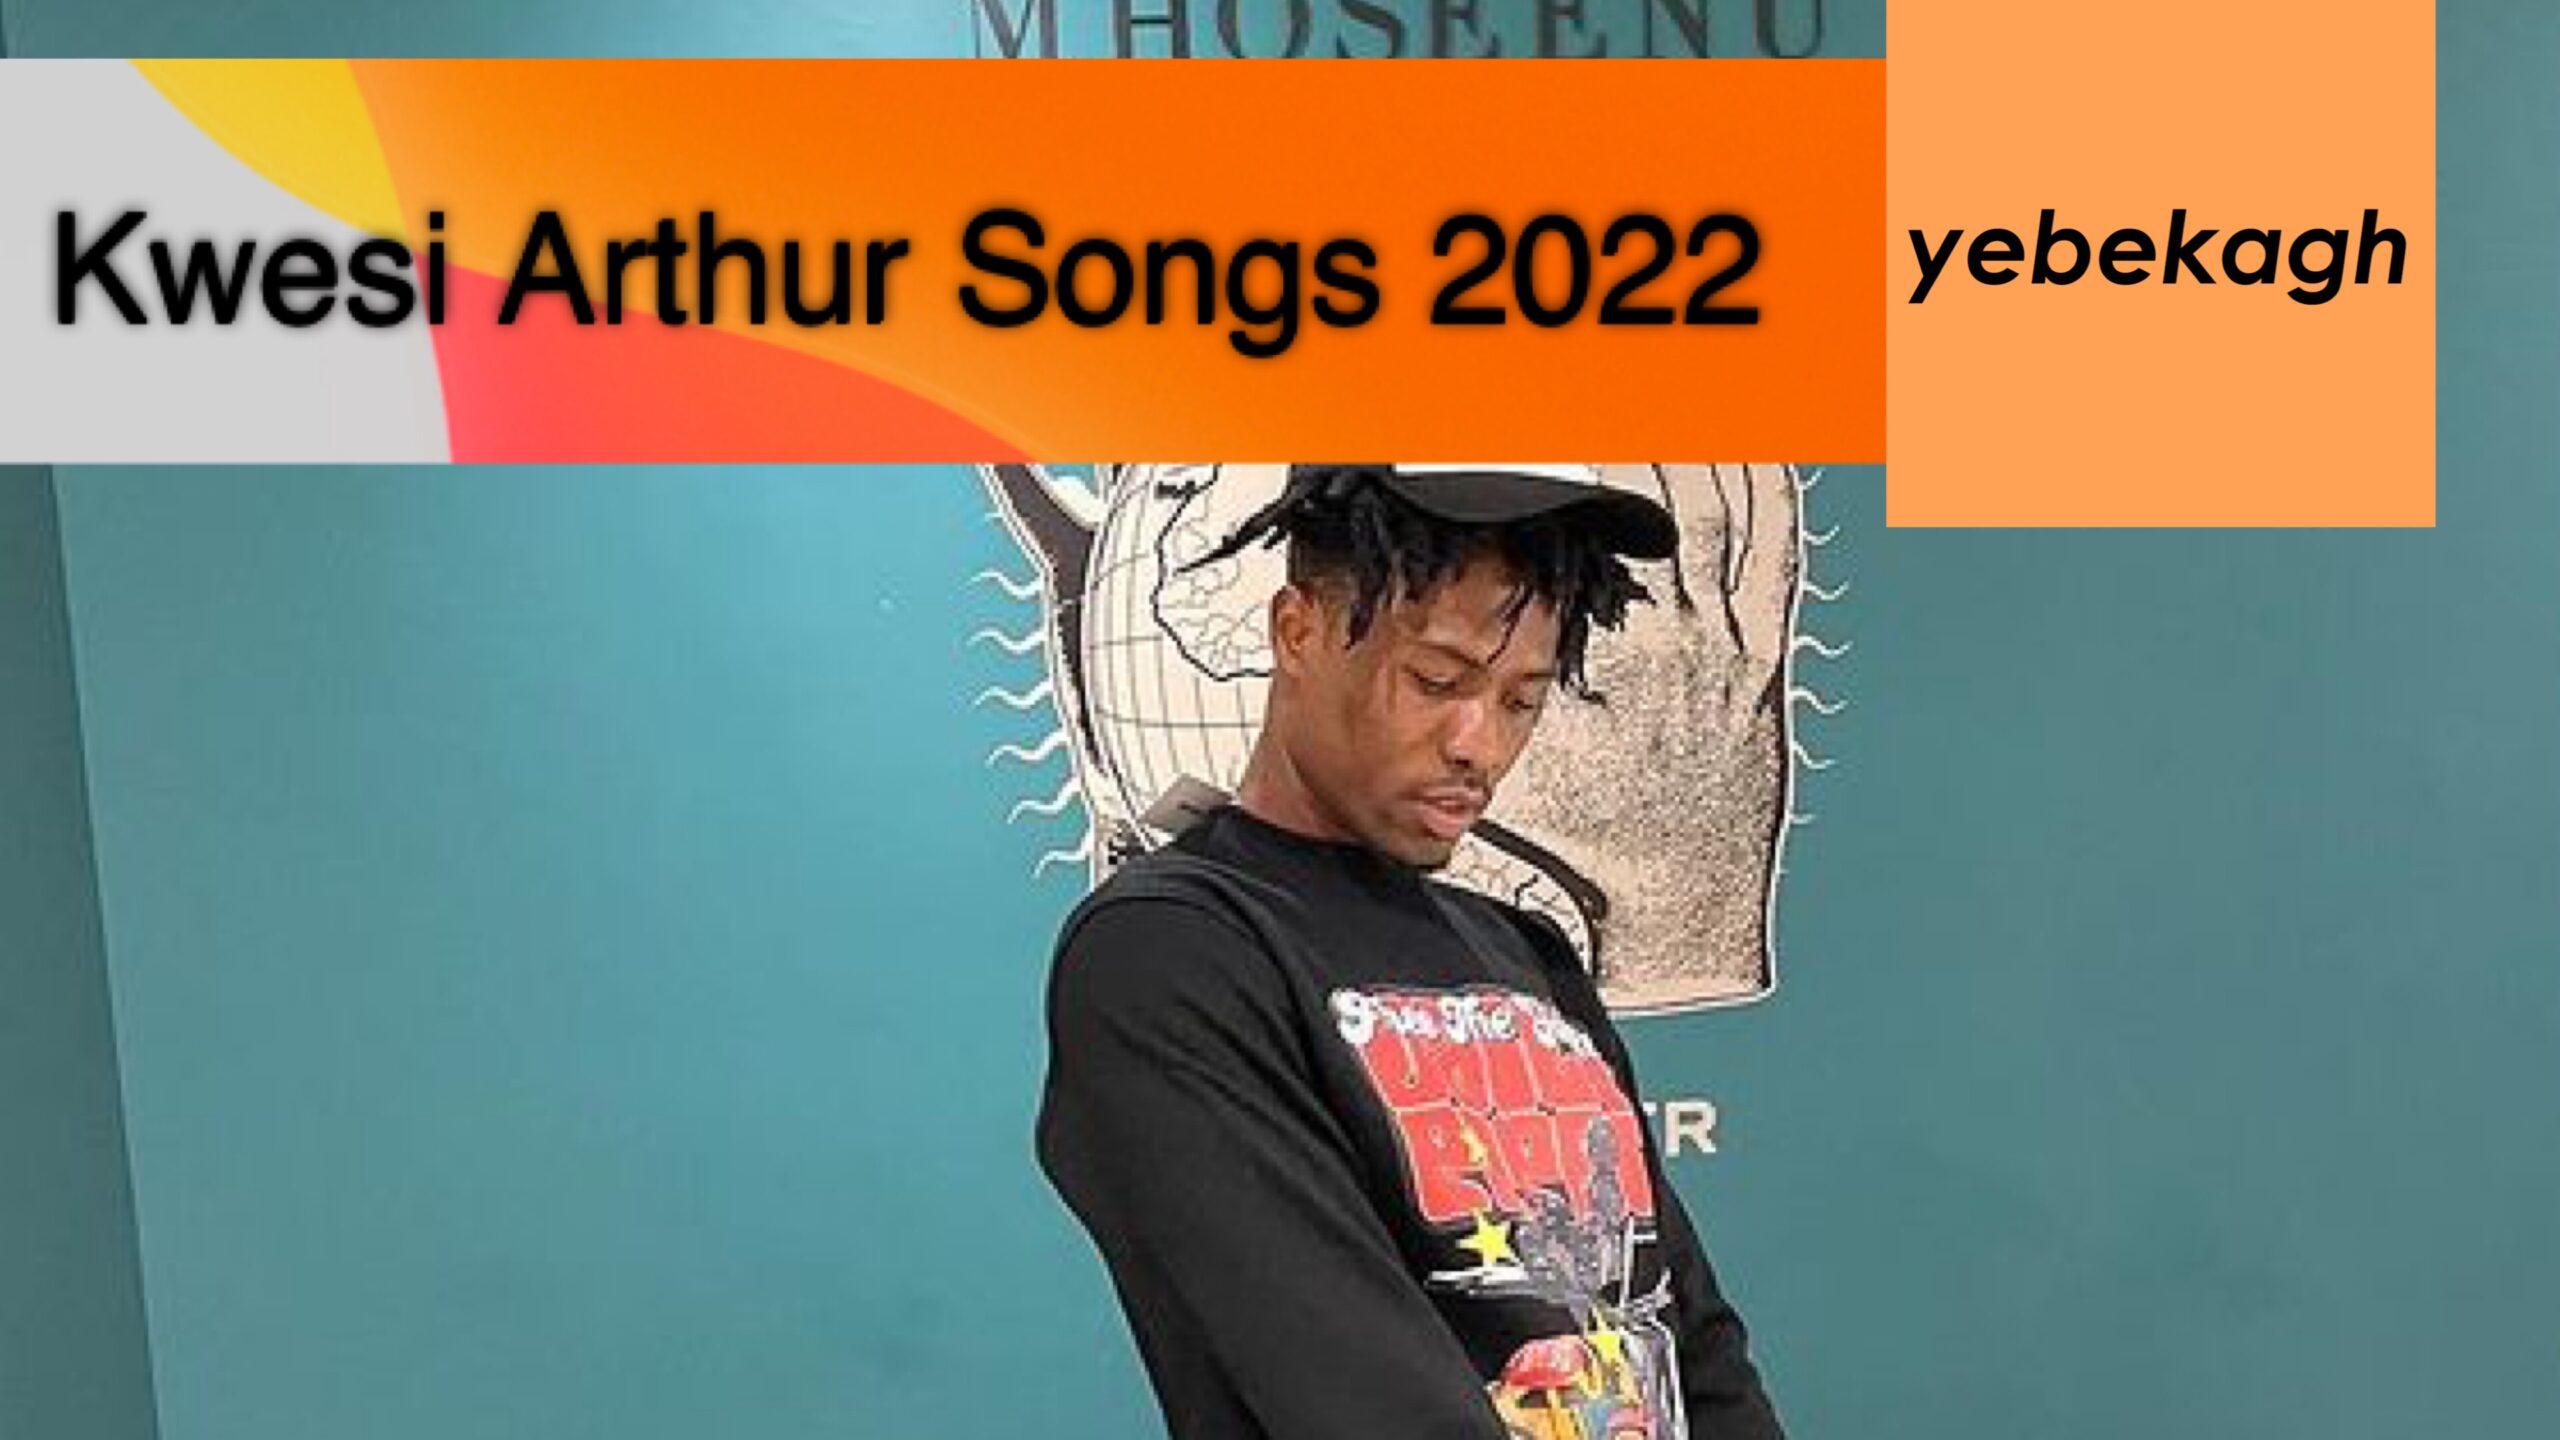 Full List of Kwesi Arthur Songs in 2022